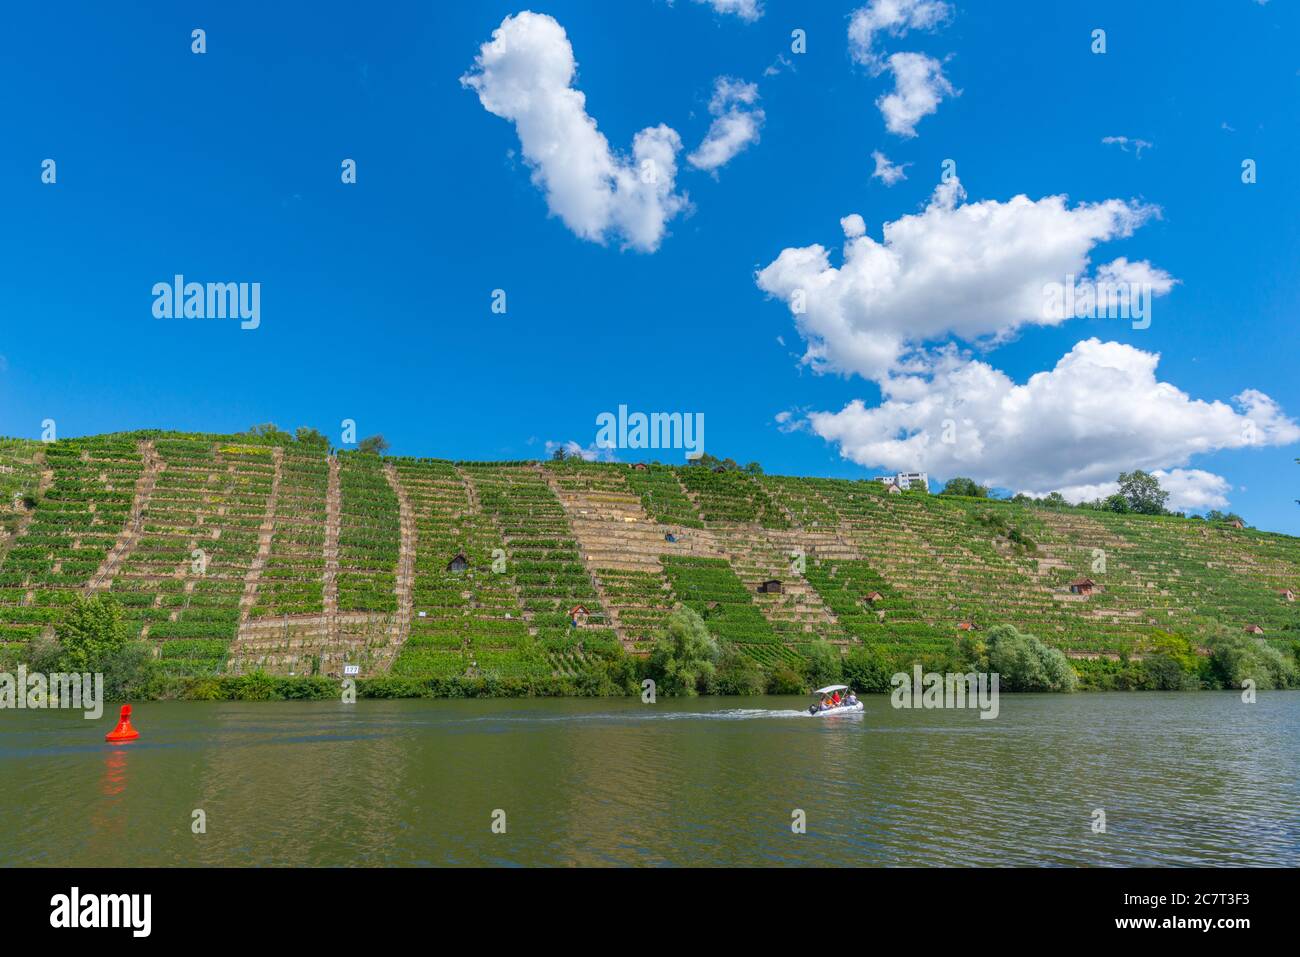 Vineyards of Stuttgart-Mühlhausen on the Neckar River, City of Stuttgart, Baden-Württemberg, South Germany, Central Europe Stock Photo